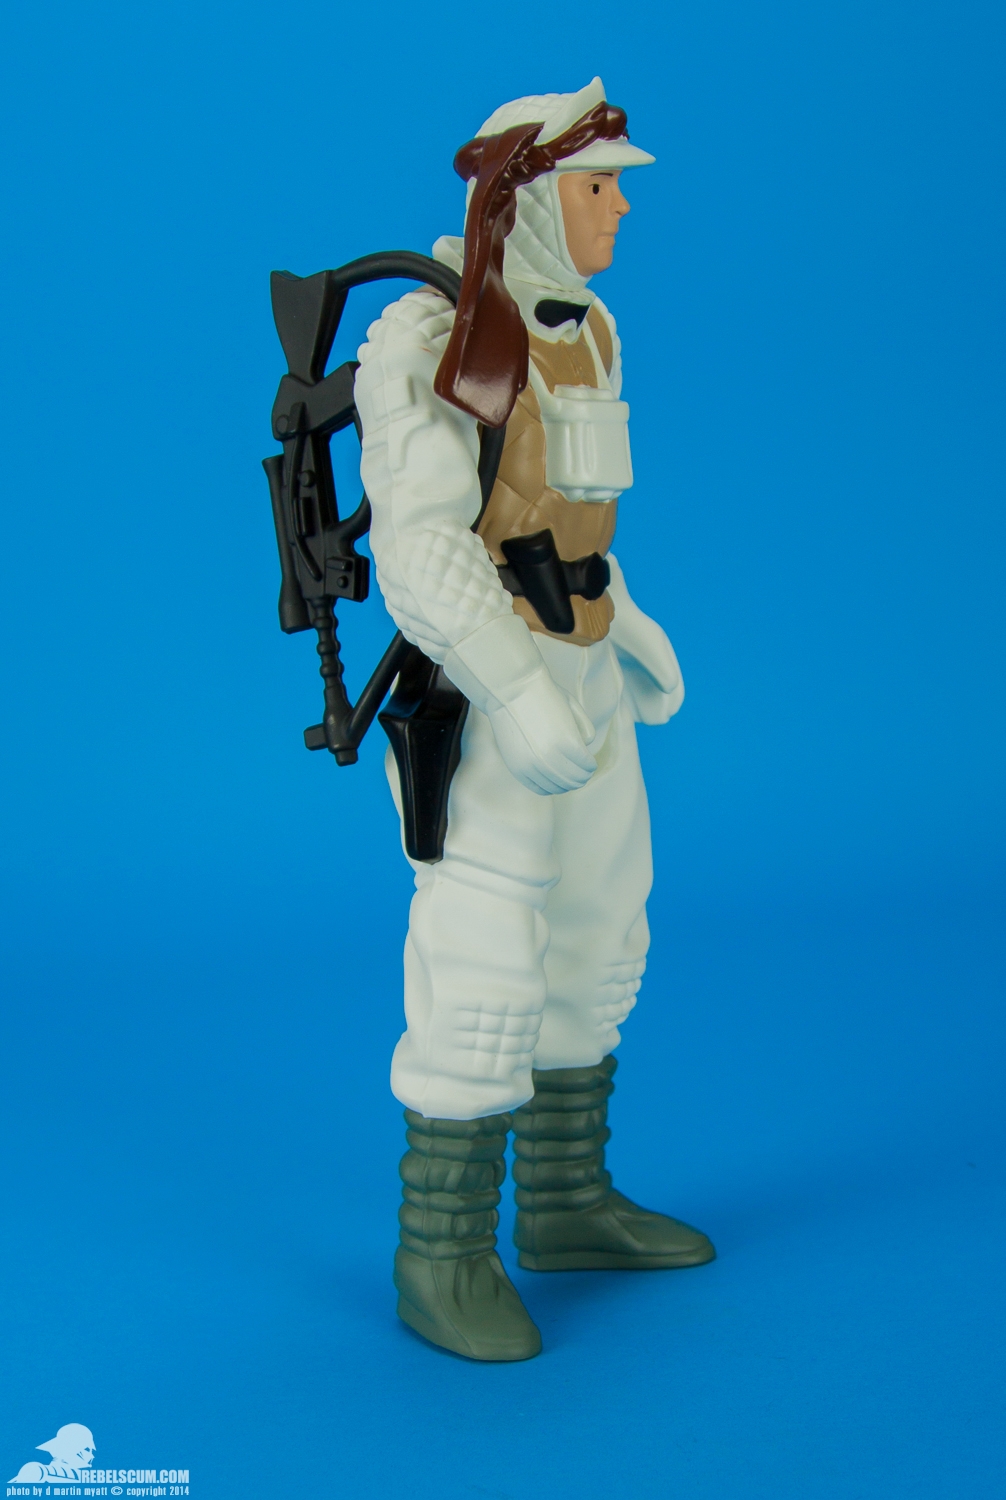 Luke-Skywalker-Hoth-Battle-Gear-Gentle-Giant-Ltd-Jumbo-Kenner-010.jpg